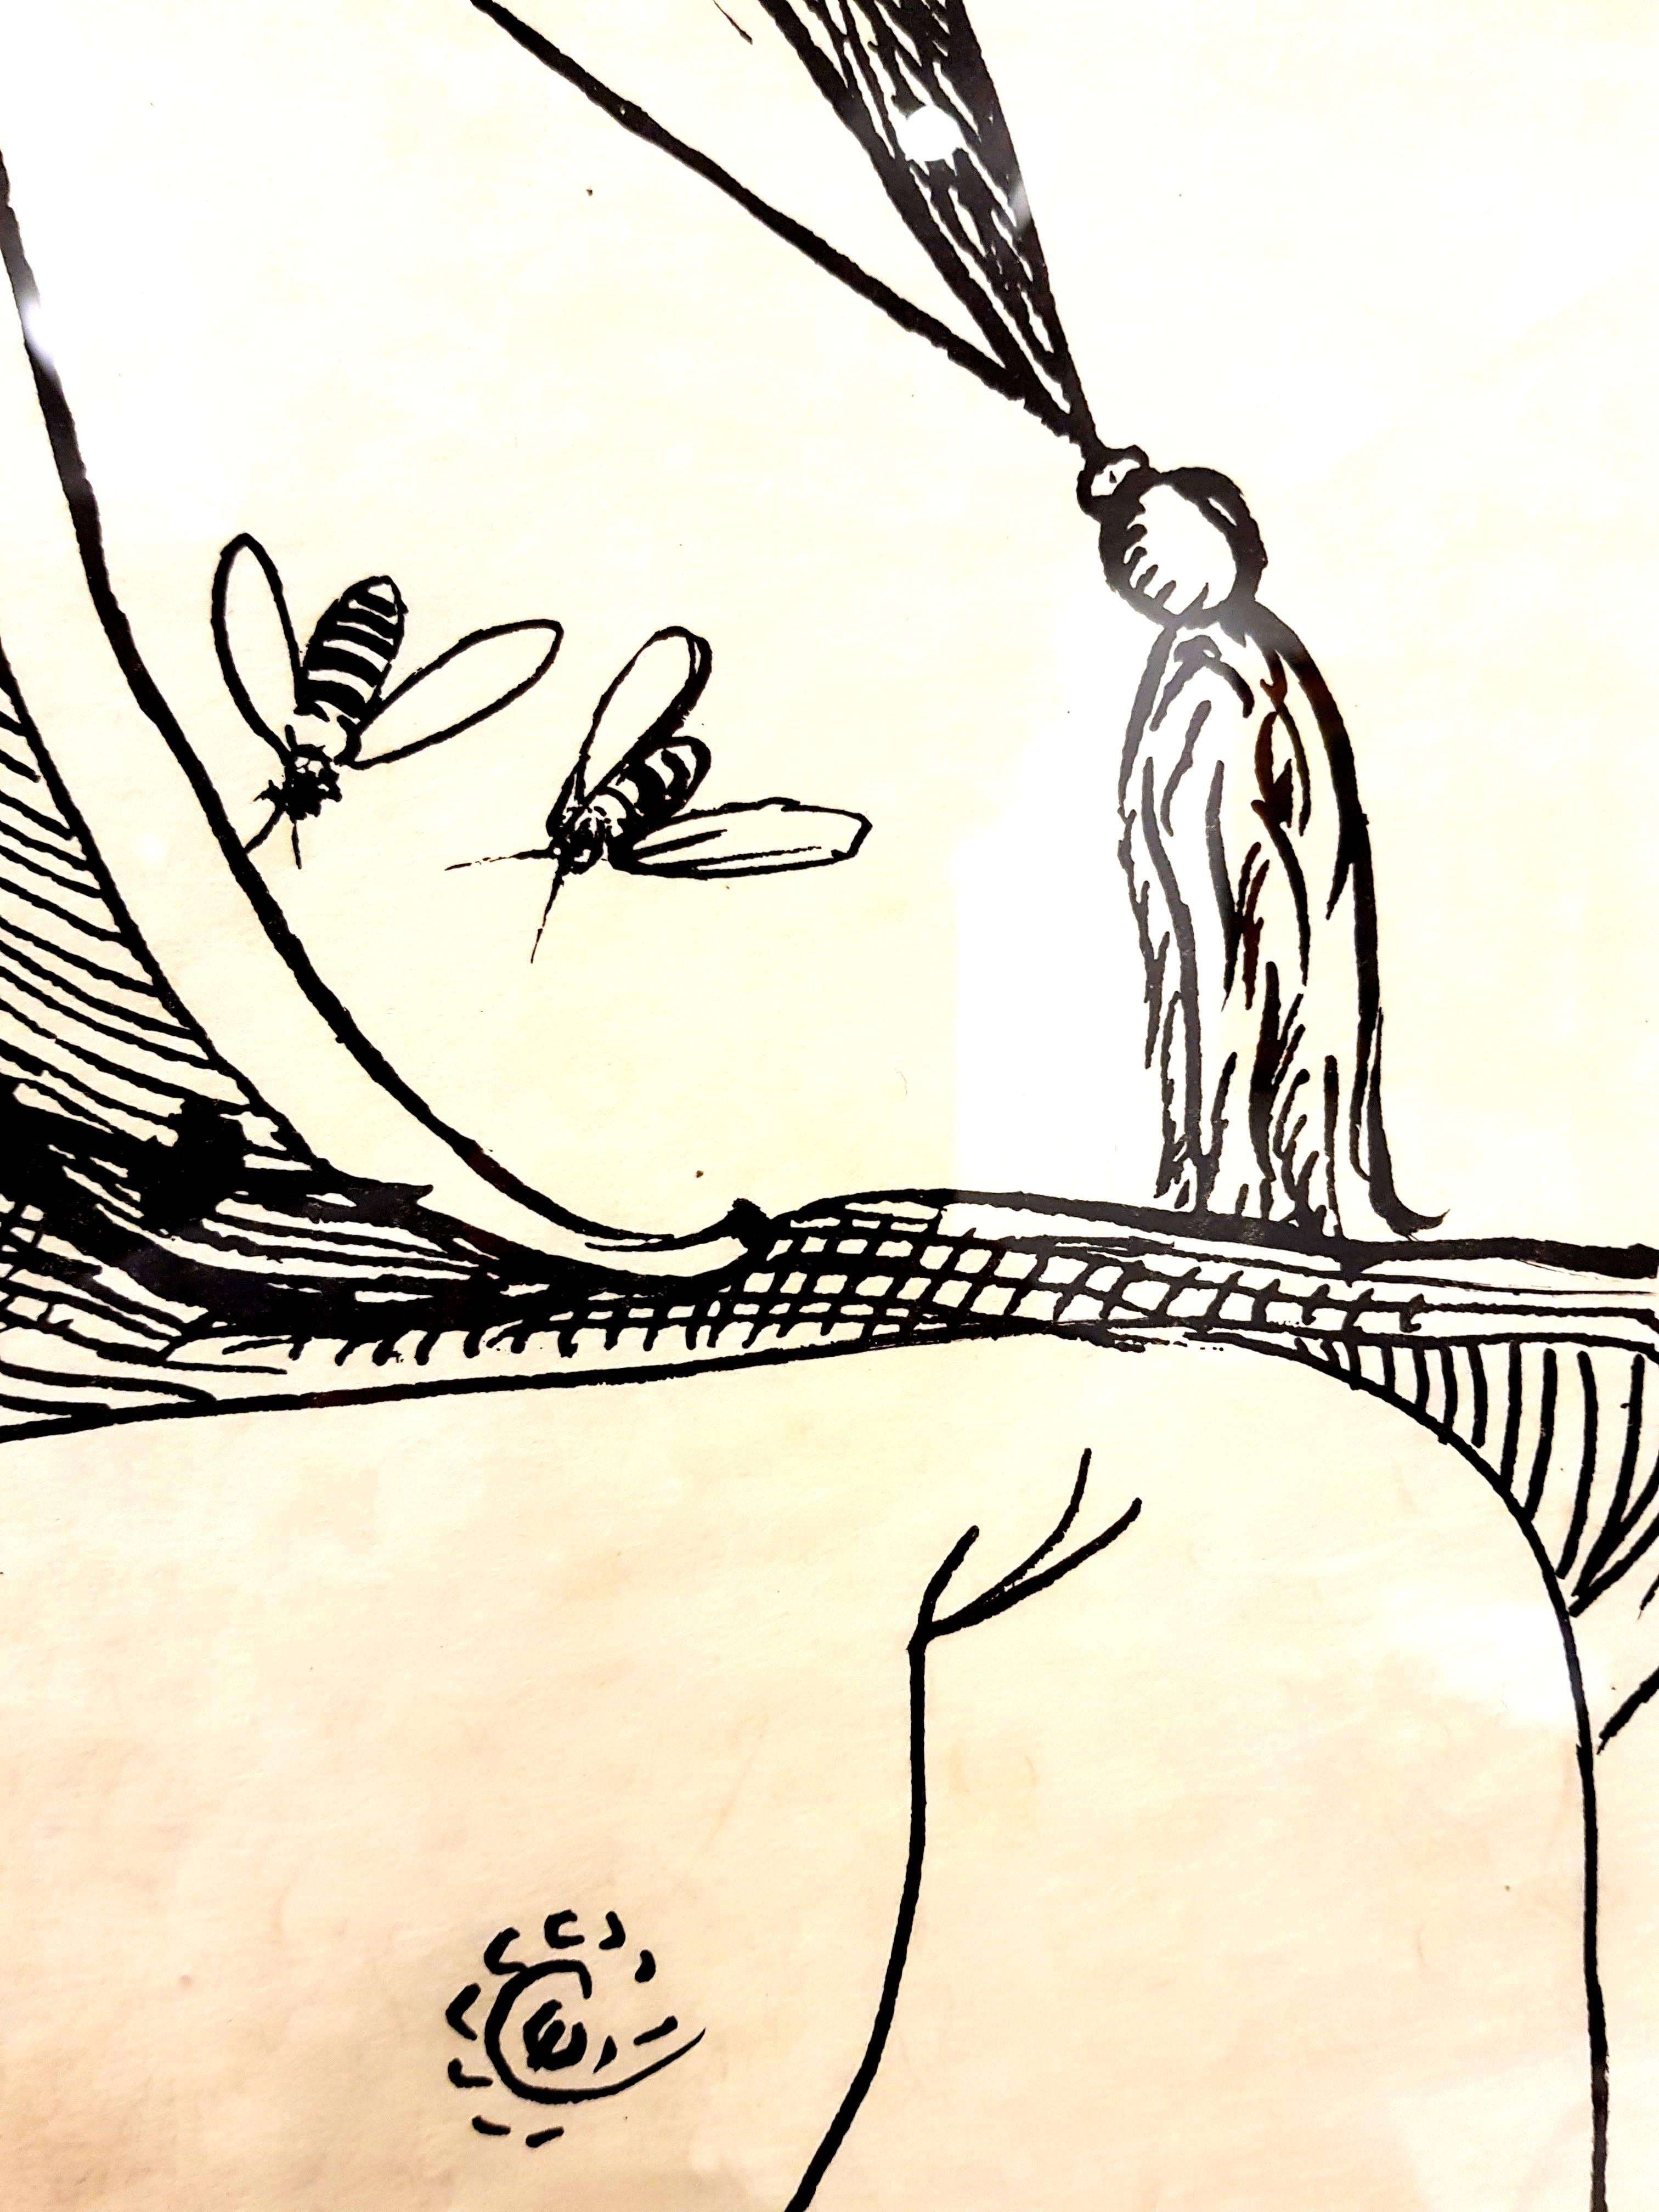 Lithographie signée de Salvador Dali
Papier japonais
Titre : Les rêves de Pantagruel
Signé au crayon par Salvador Dali
Dimensions : 76 x 56 cm
Edition : EA
1973
Références : Field 73-7 (p. 173-174) / Michler & Lopsinger 1398-1422 (t.2 P. 153-155). 